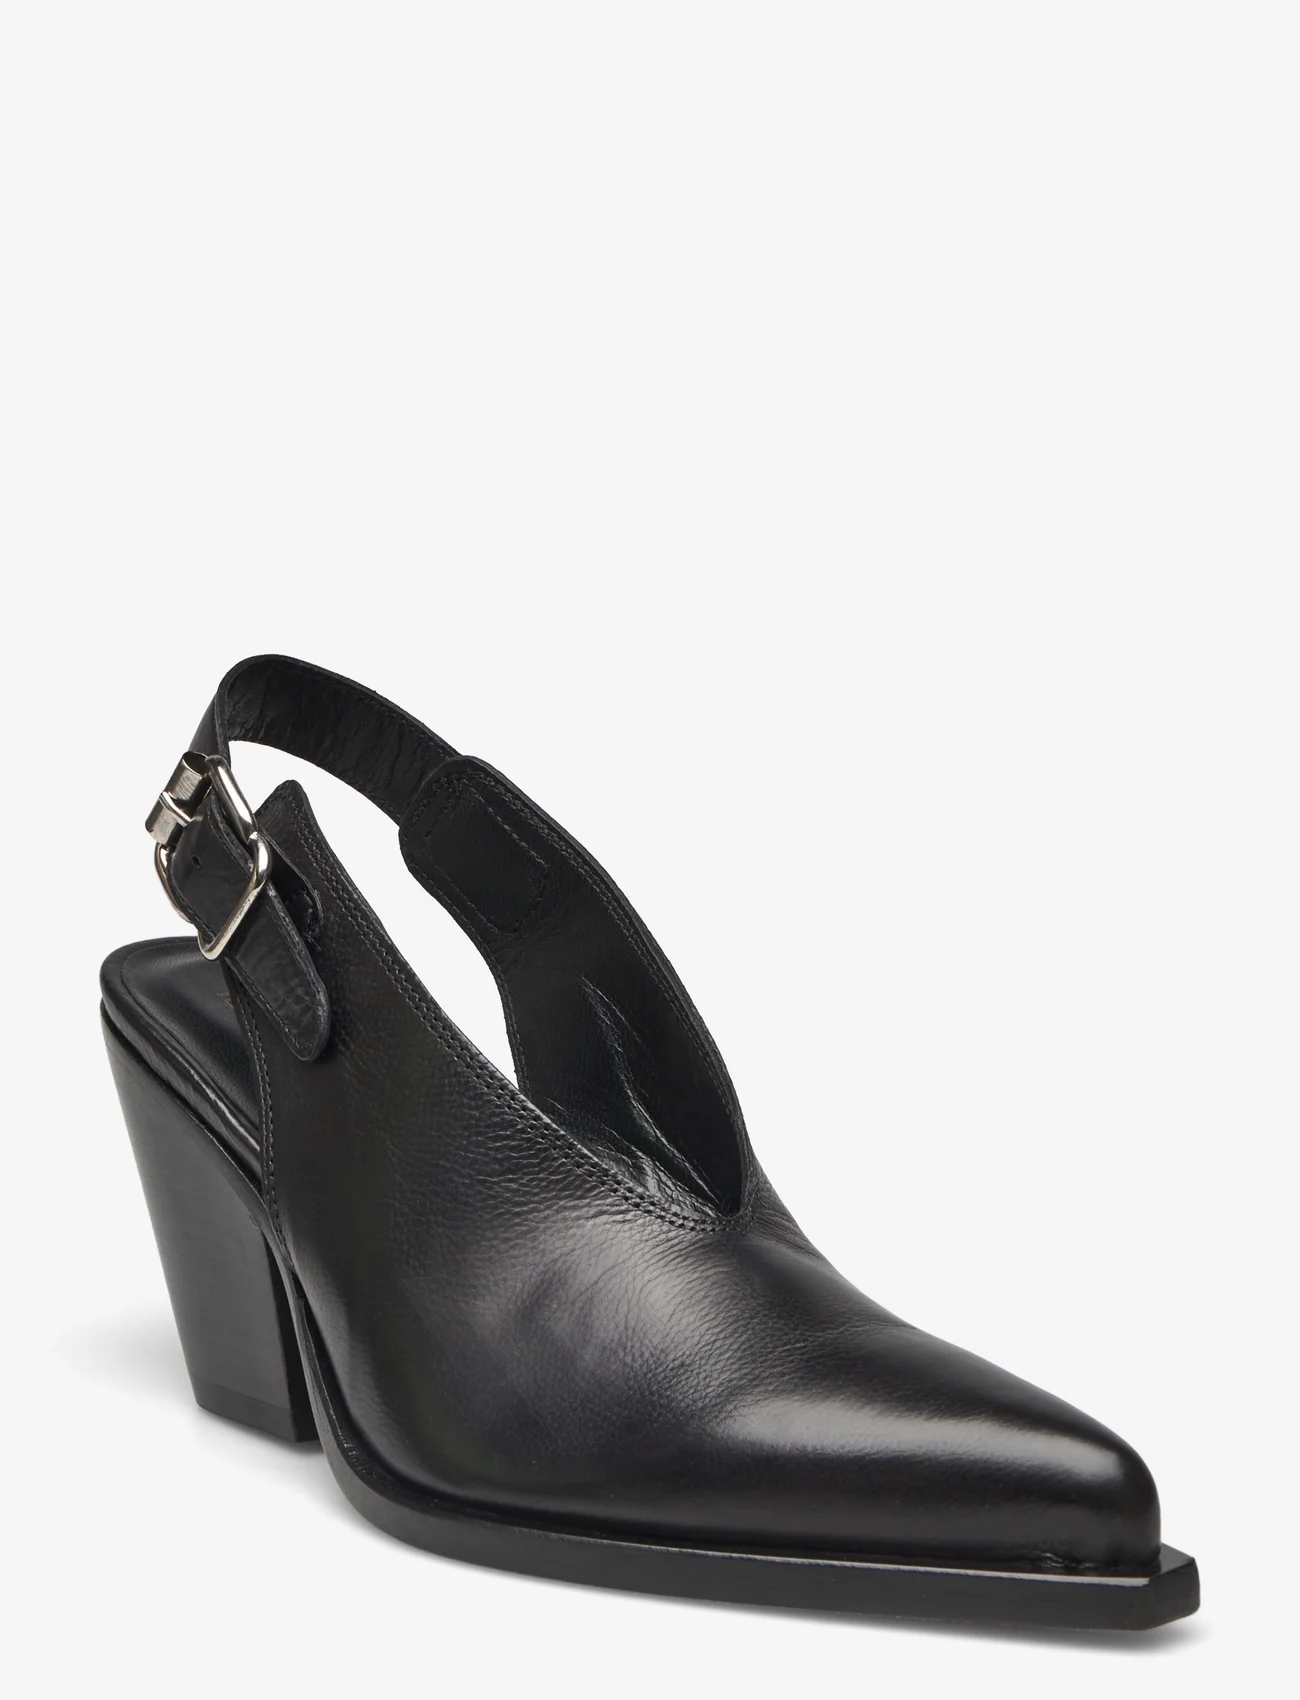 Laura Bellariva - shoes - feestelijke kleding voor outlet-prijzen - black - 0